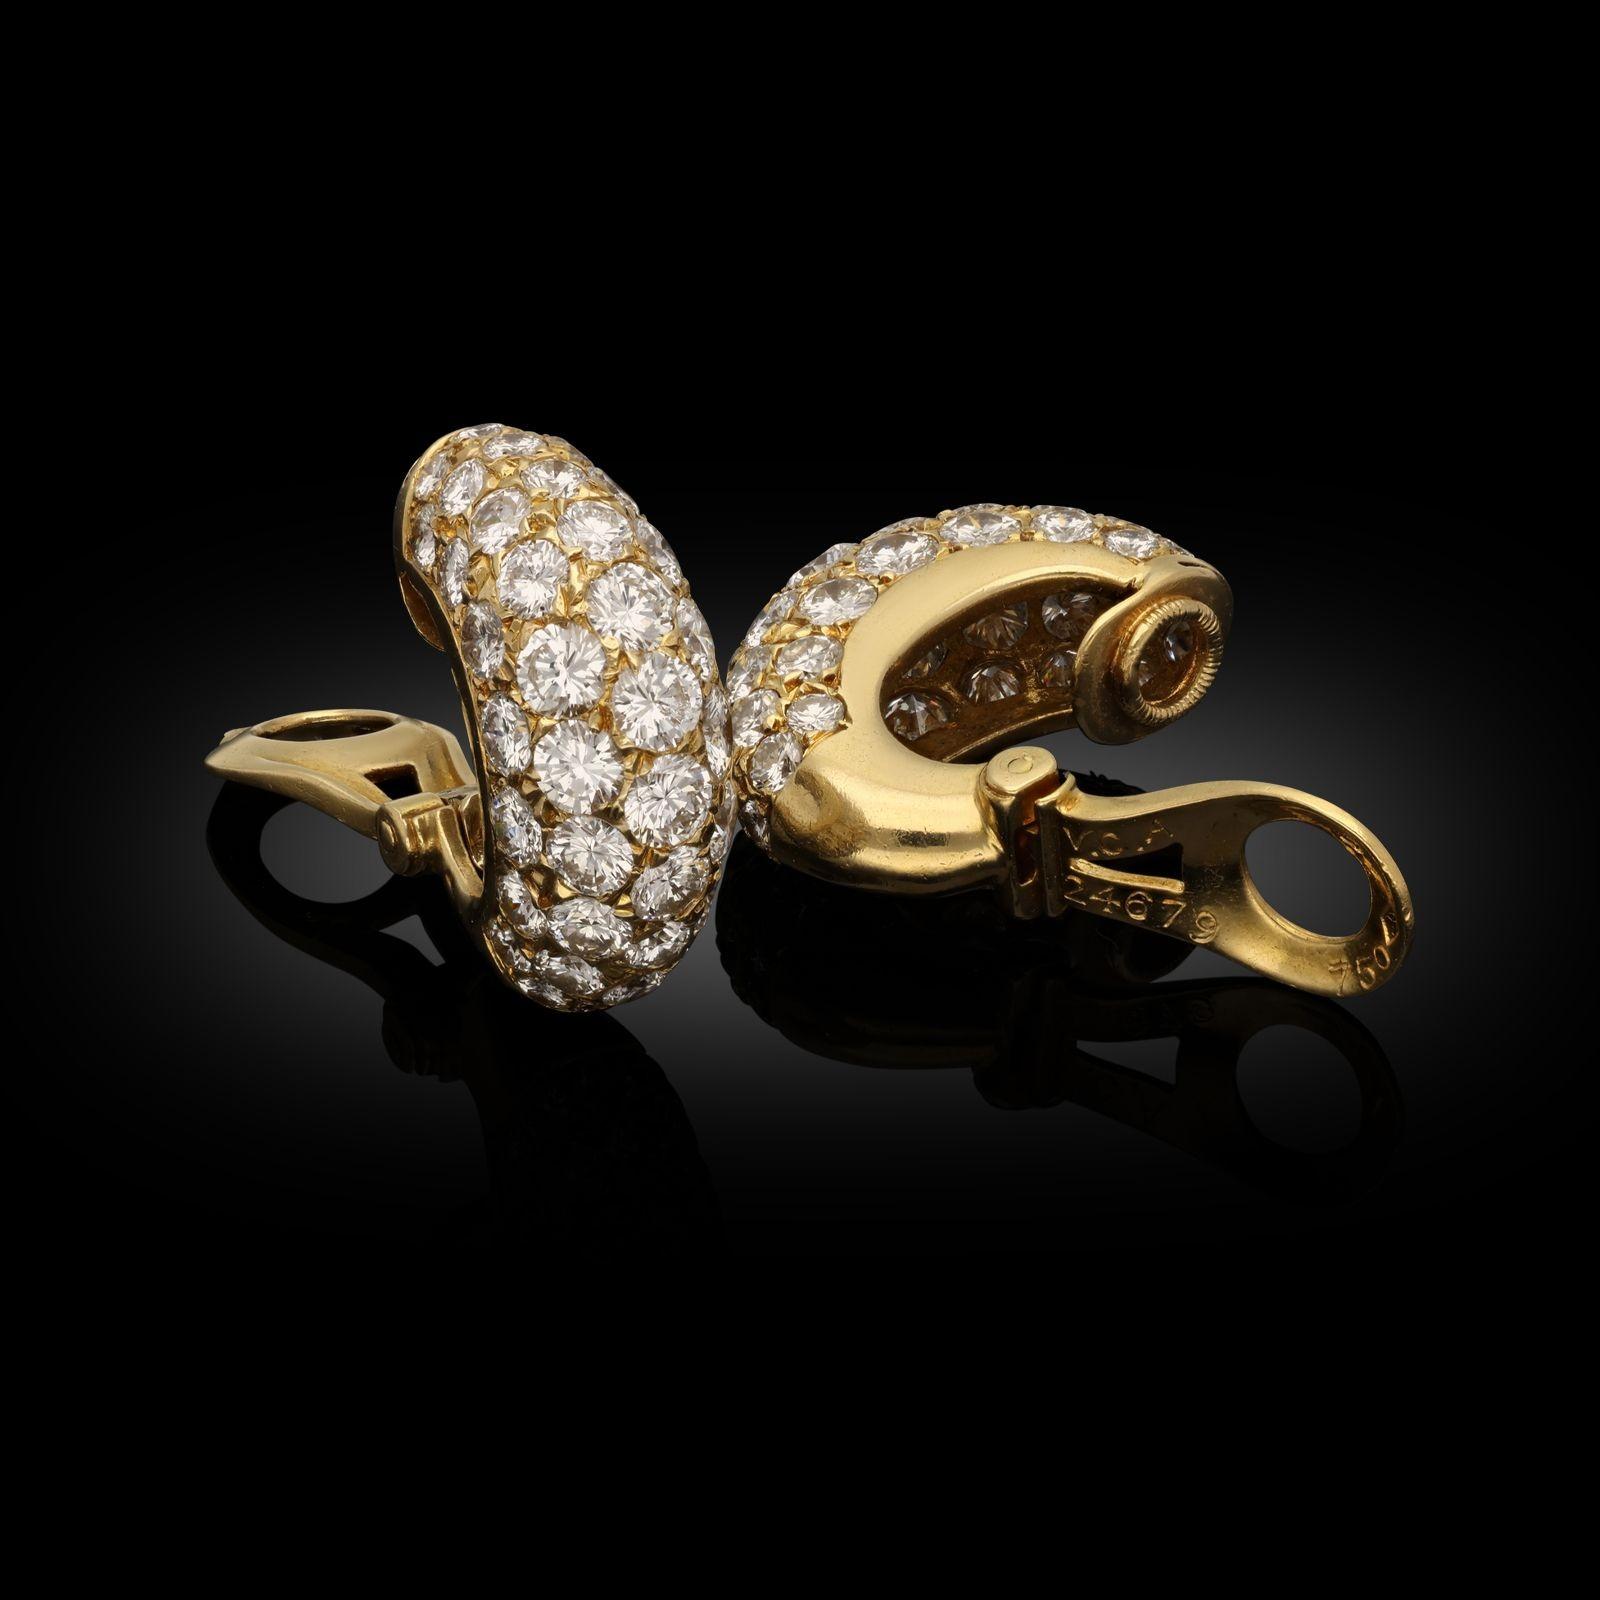 Ein wunderschönes Paar Diamant-Ohrringe von Van Cleef und Arpels aus dem Jahr 1974. Jeder Ohrring ist als hoher, gewölbter halber Ohrring aus 18-karätigem Gelbgold mit fünf Reihen runder Diamanten im Brillantschliff besetzt und mit einer Klammer